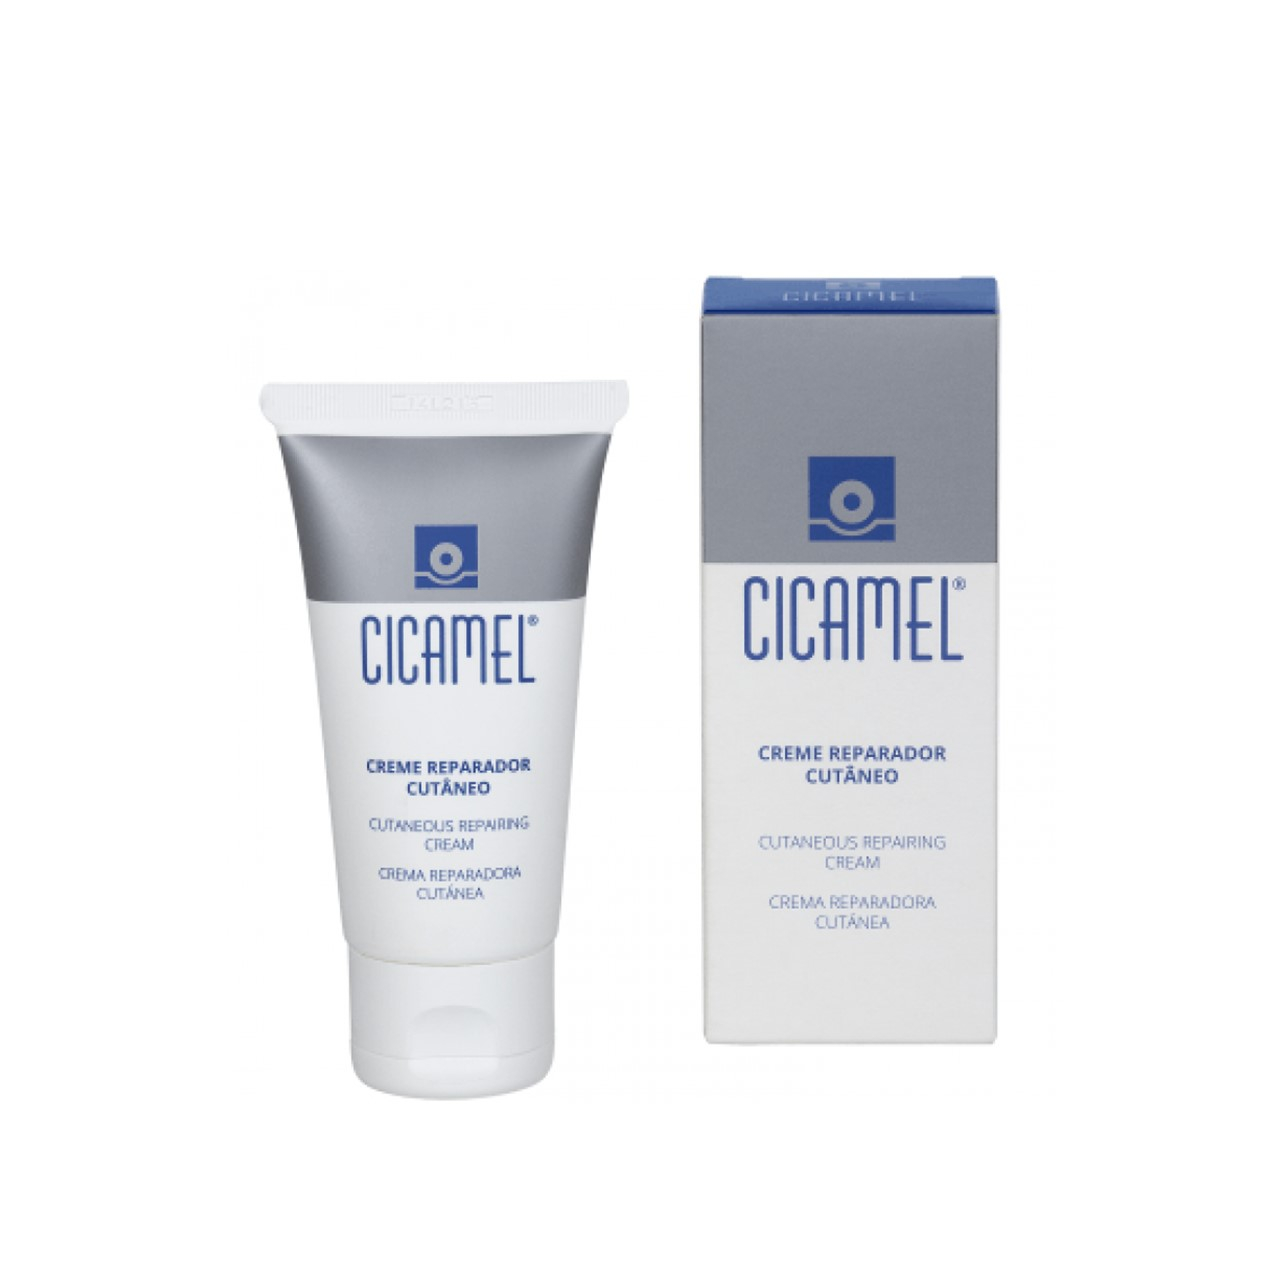 Cicamel Cutaneous Reparing Cream 50ml